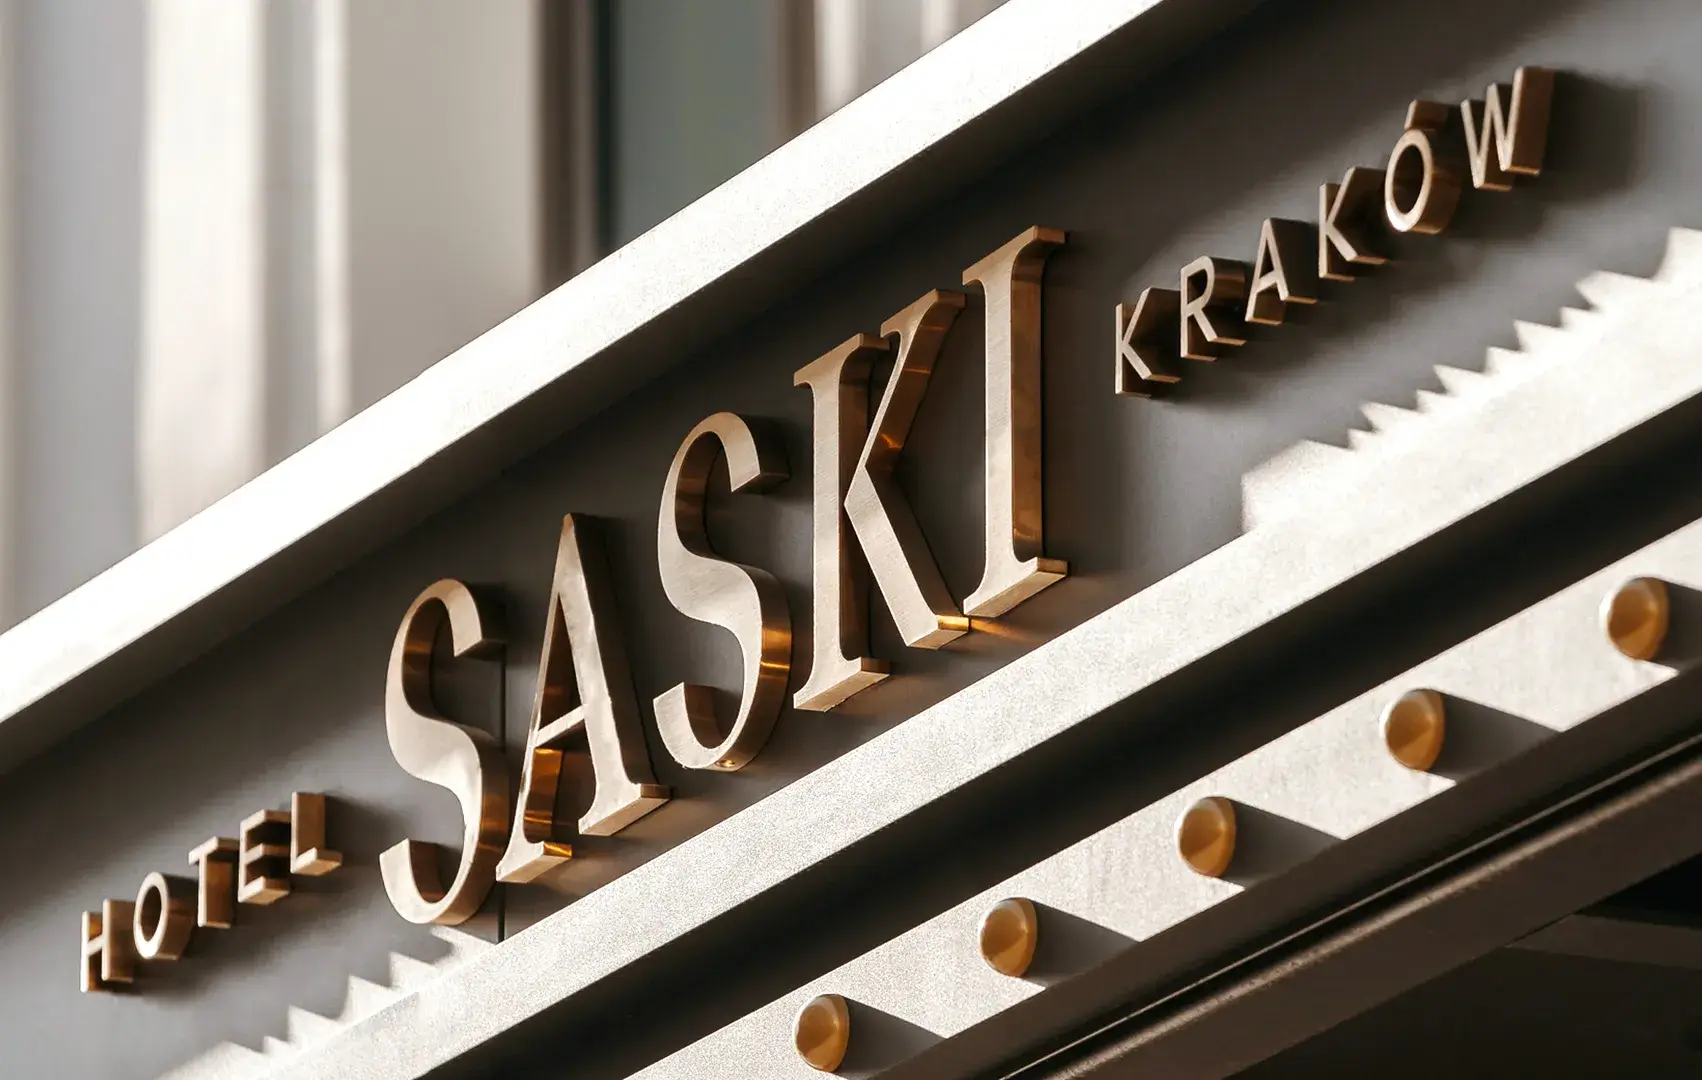 Buchstaben aus gebürstetem Edelstahl an der Außenfassade des Saski Hotels